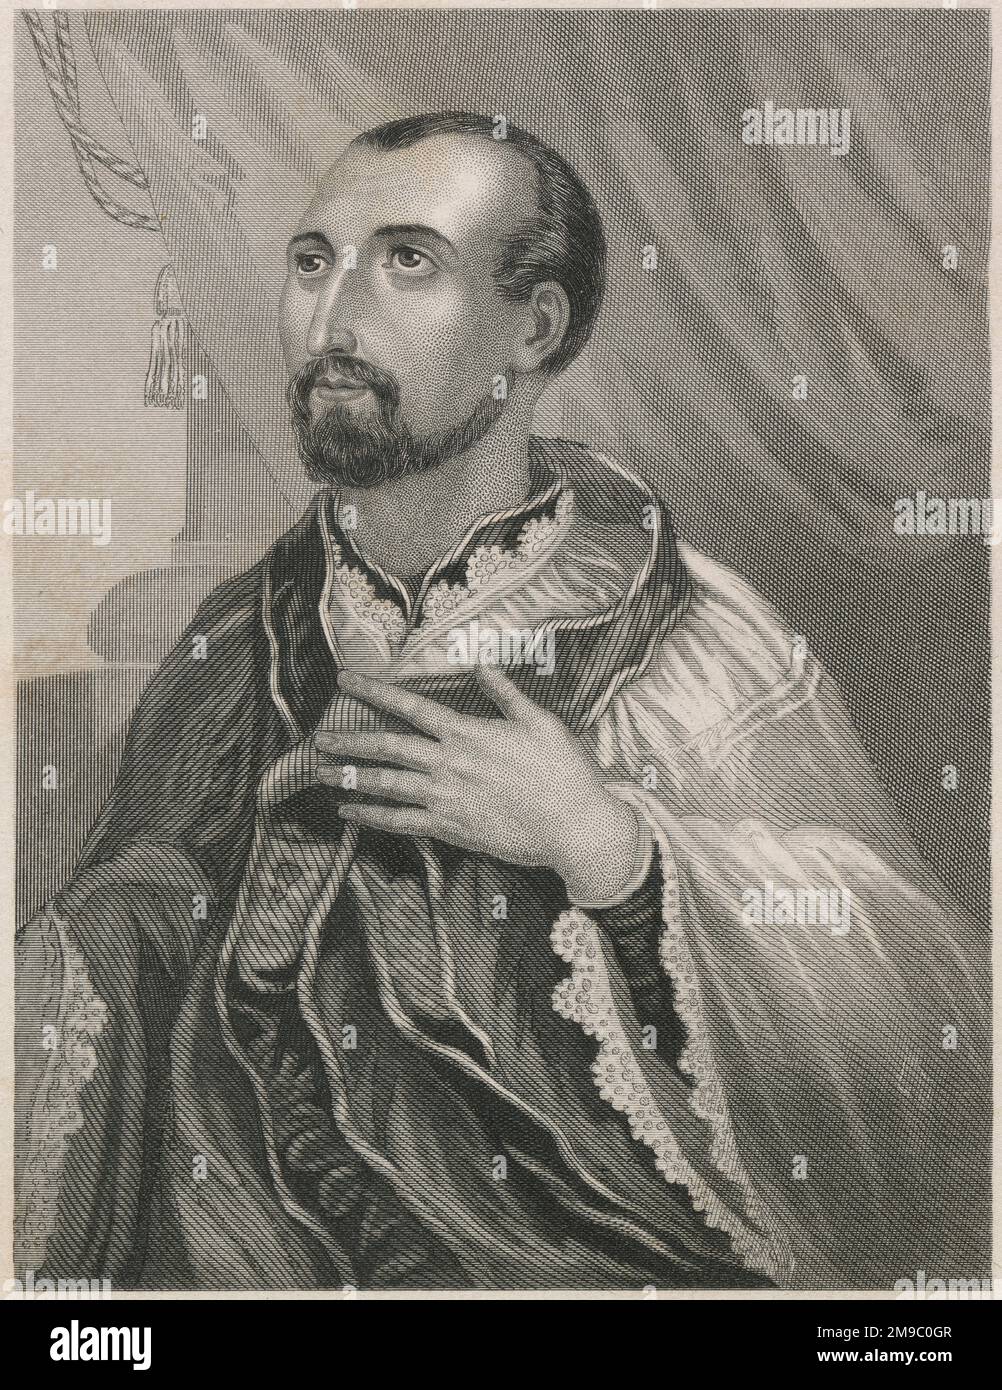 Antique circa 1860 engraving, portrait of Jacques Lainès.  SOURCE: ORIGINAL ENGRAVING Stock Photo